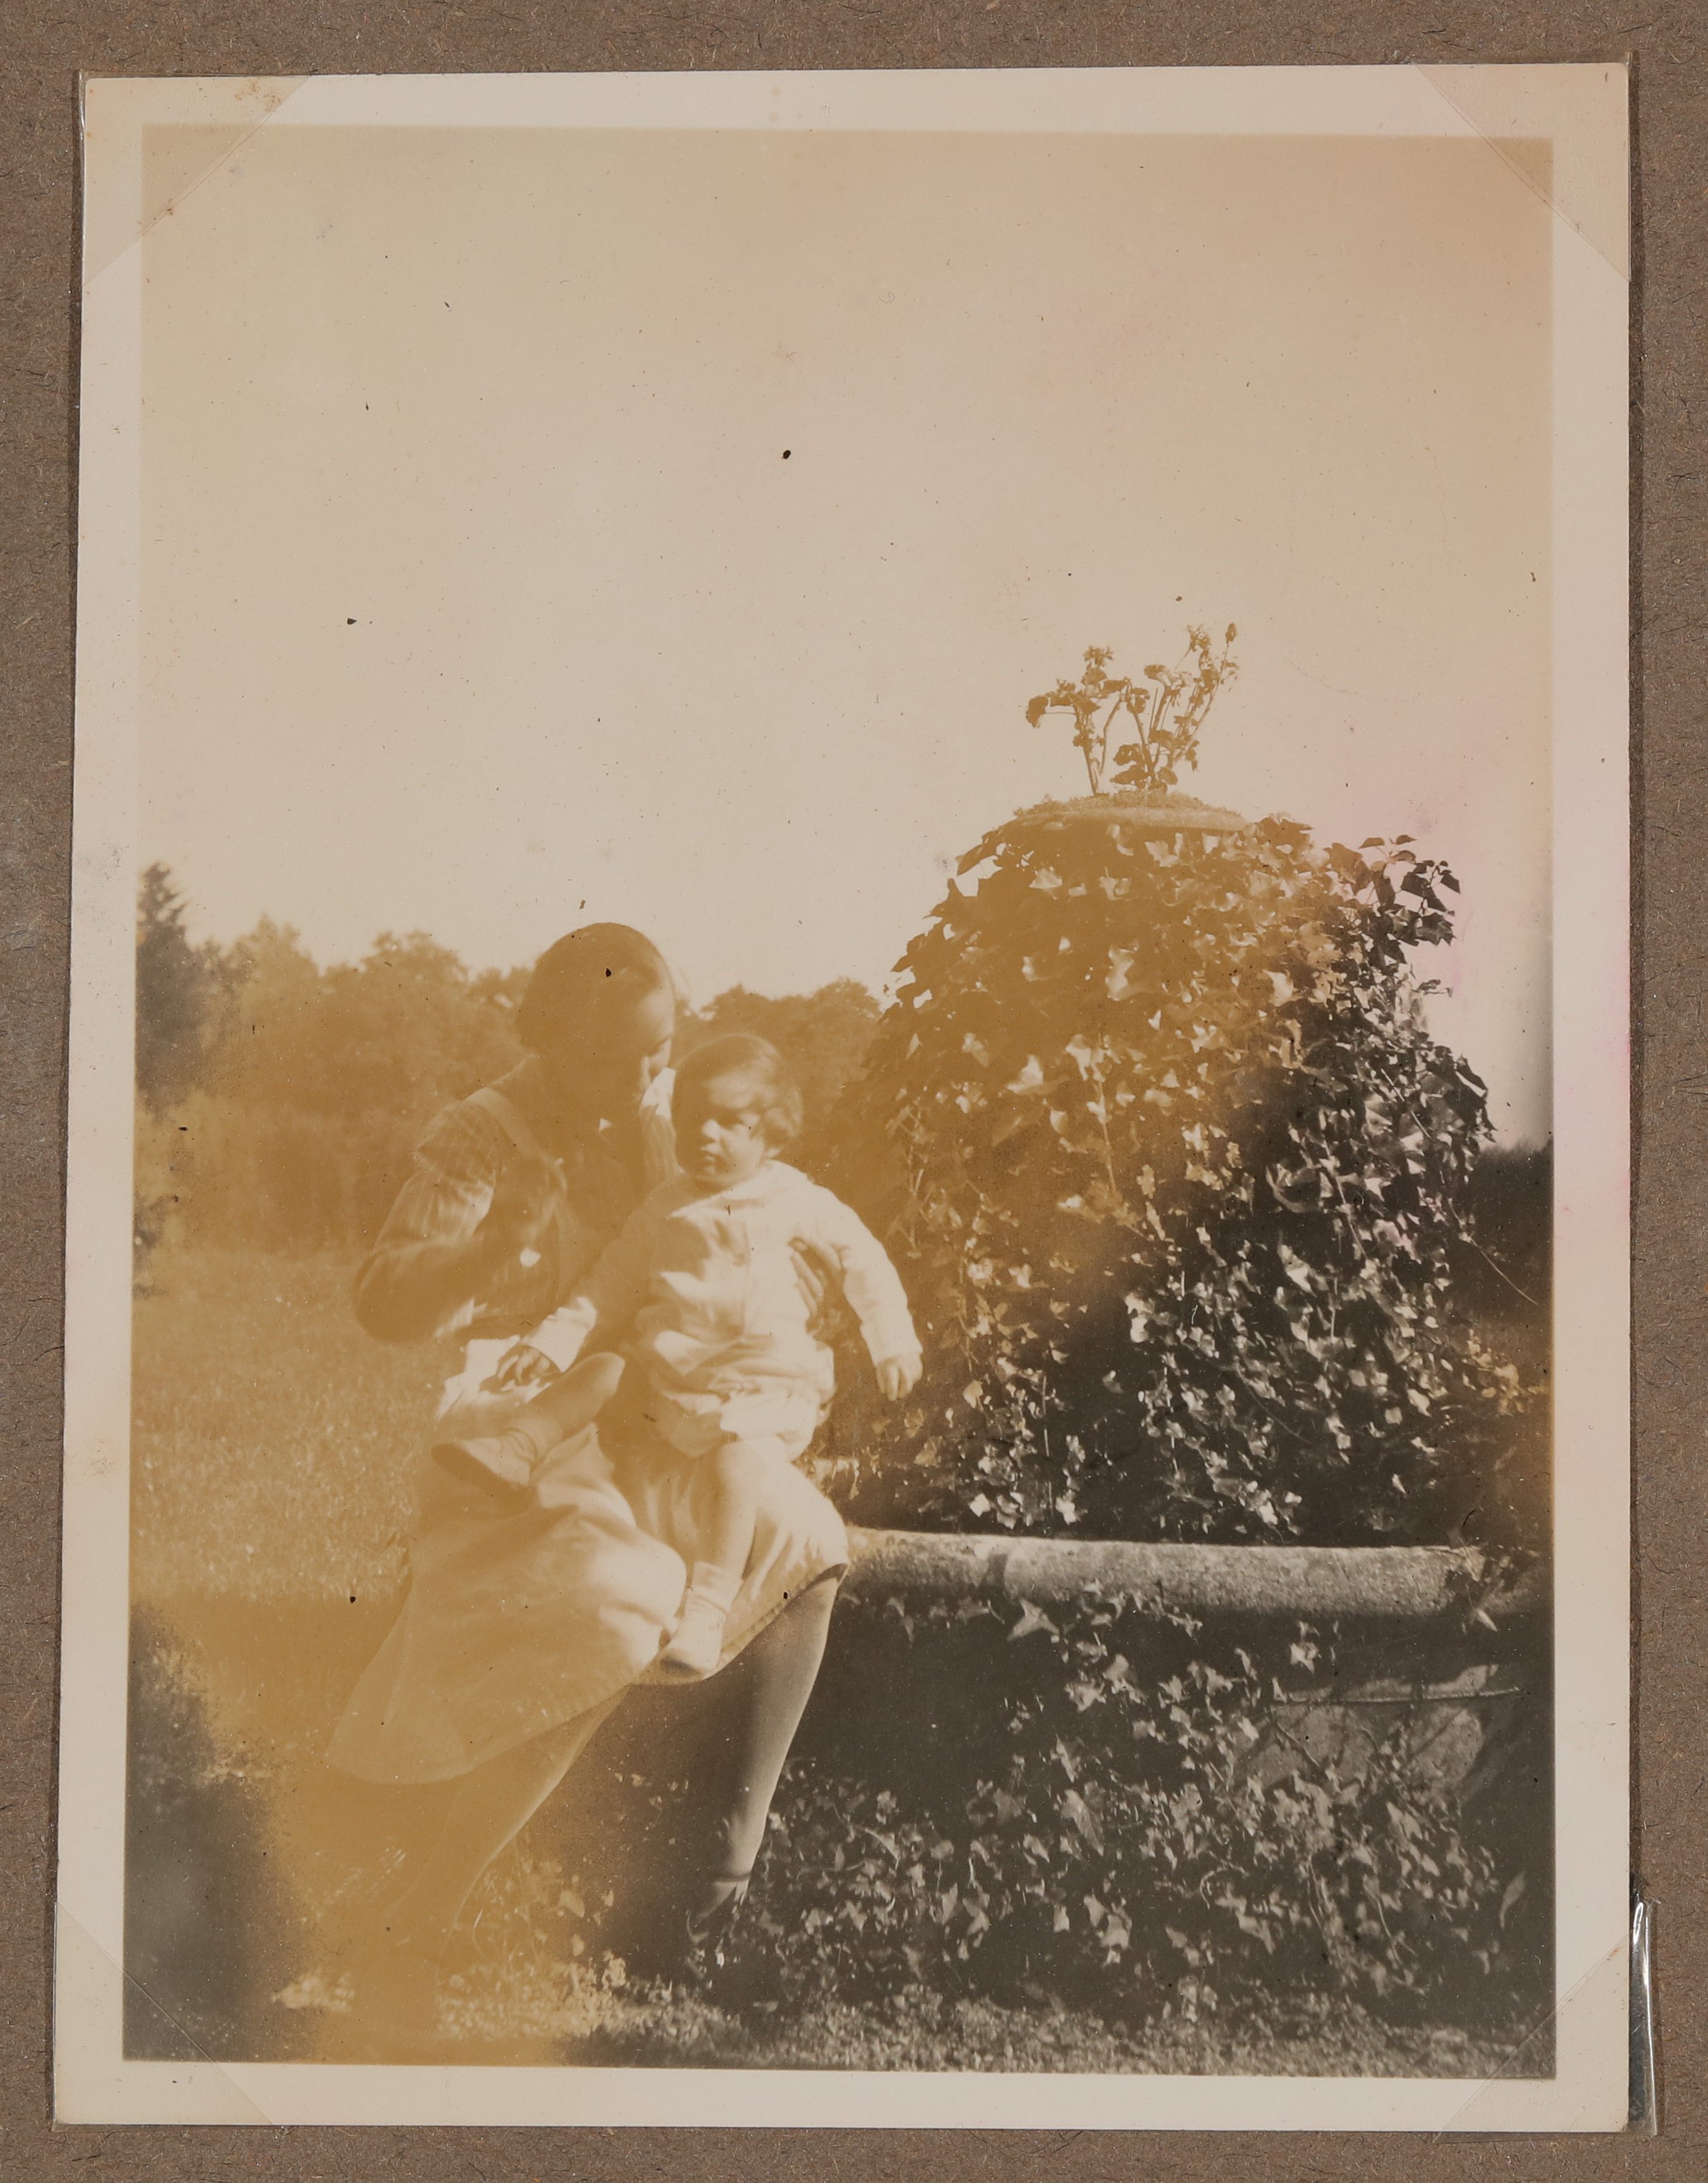 Christiane Zimmers Sohn Andreas mit dem Kindermädchen auf Holzgeländer (Vera Graaf CC BY-NC-SA)